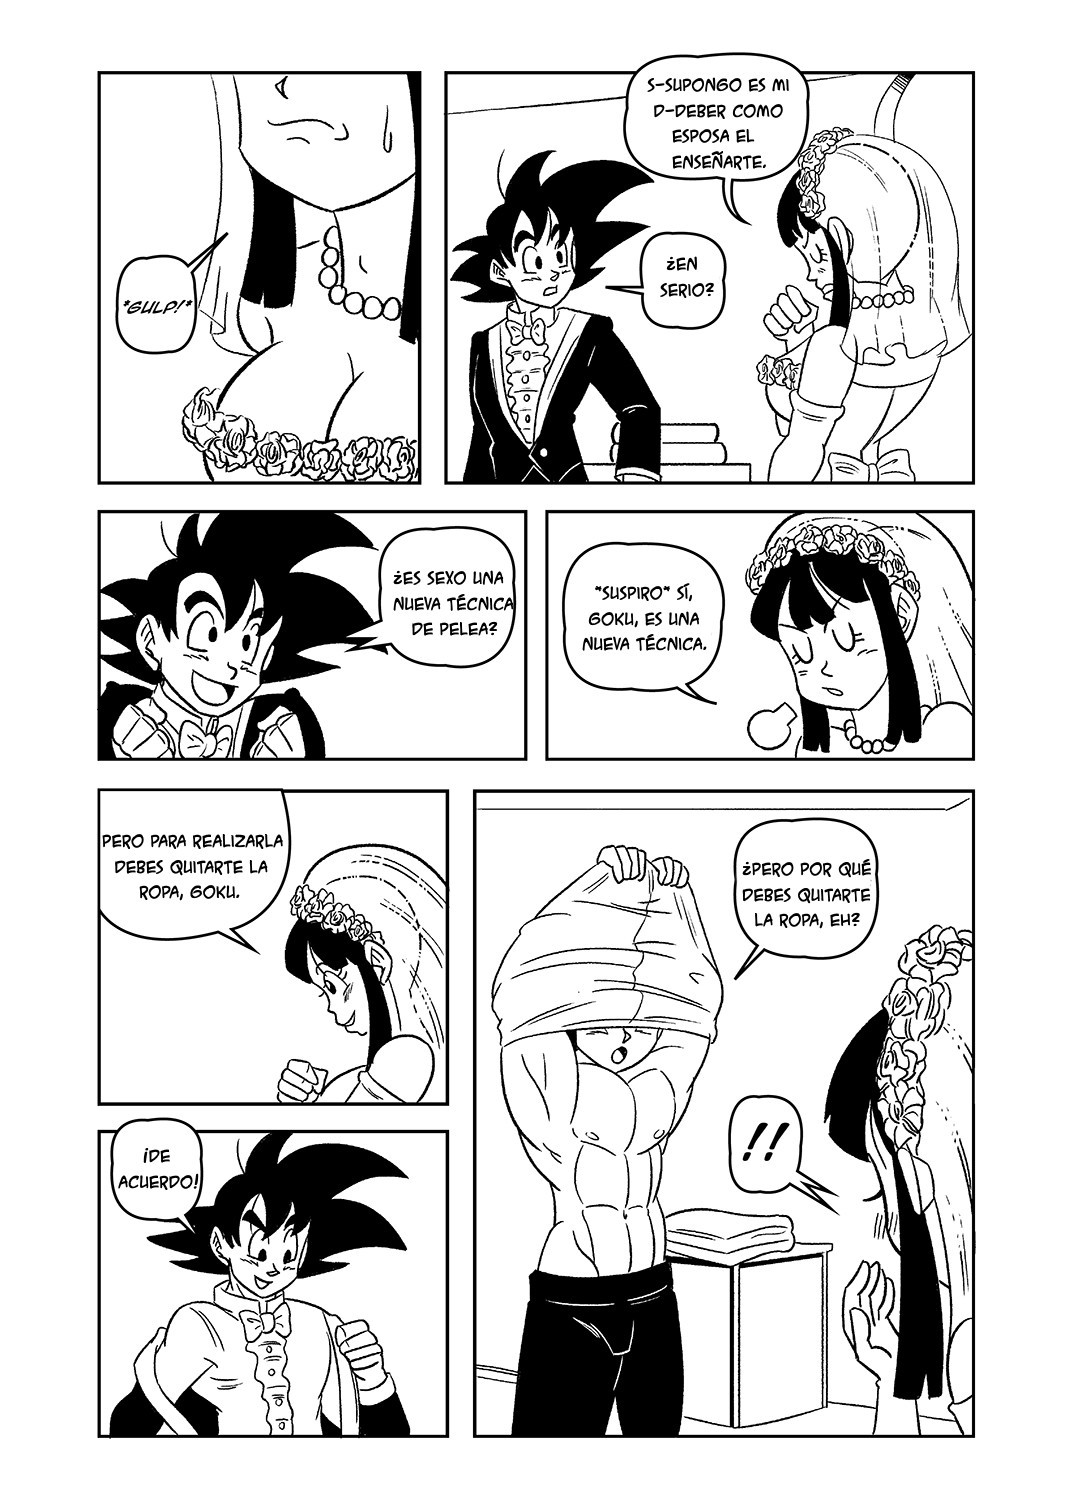 Goku and chi chi wedding night